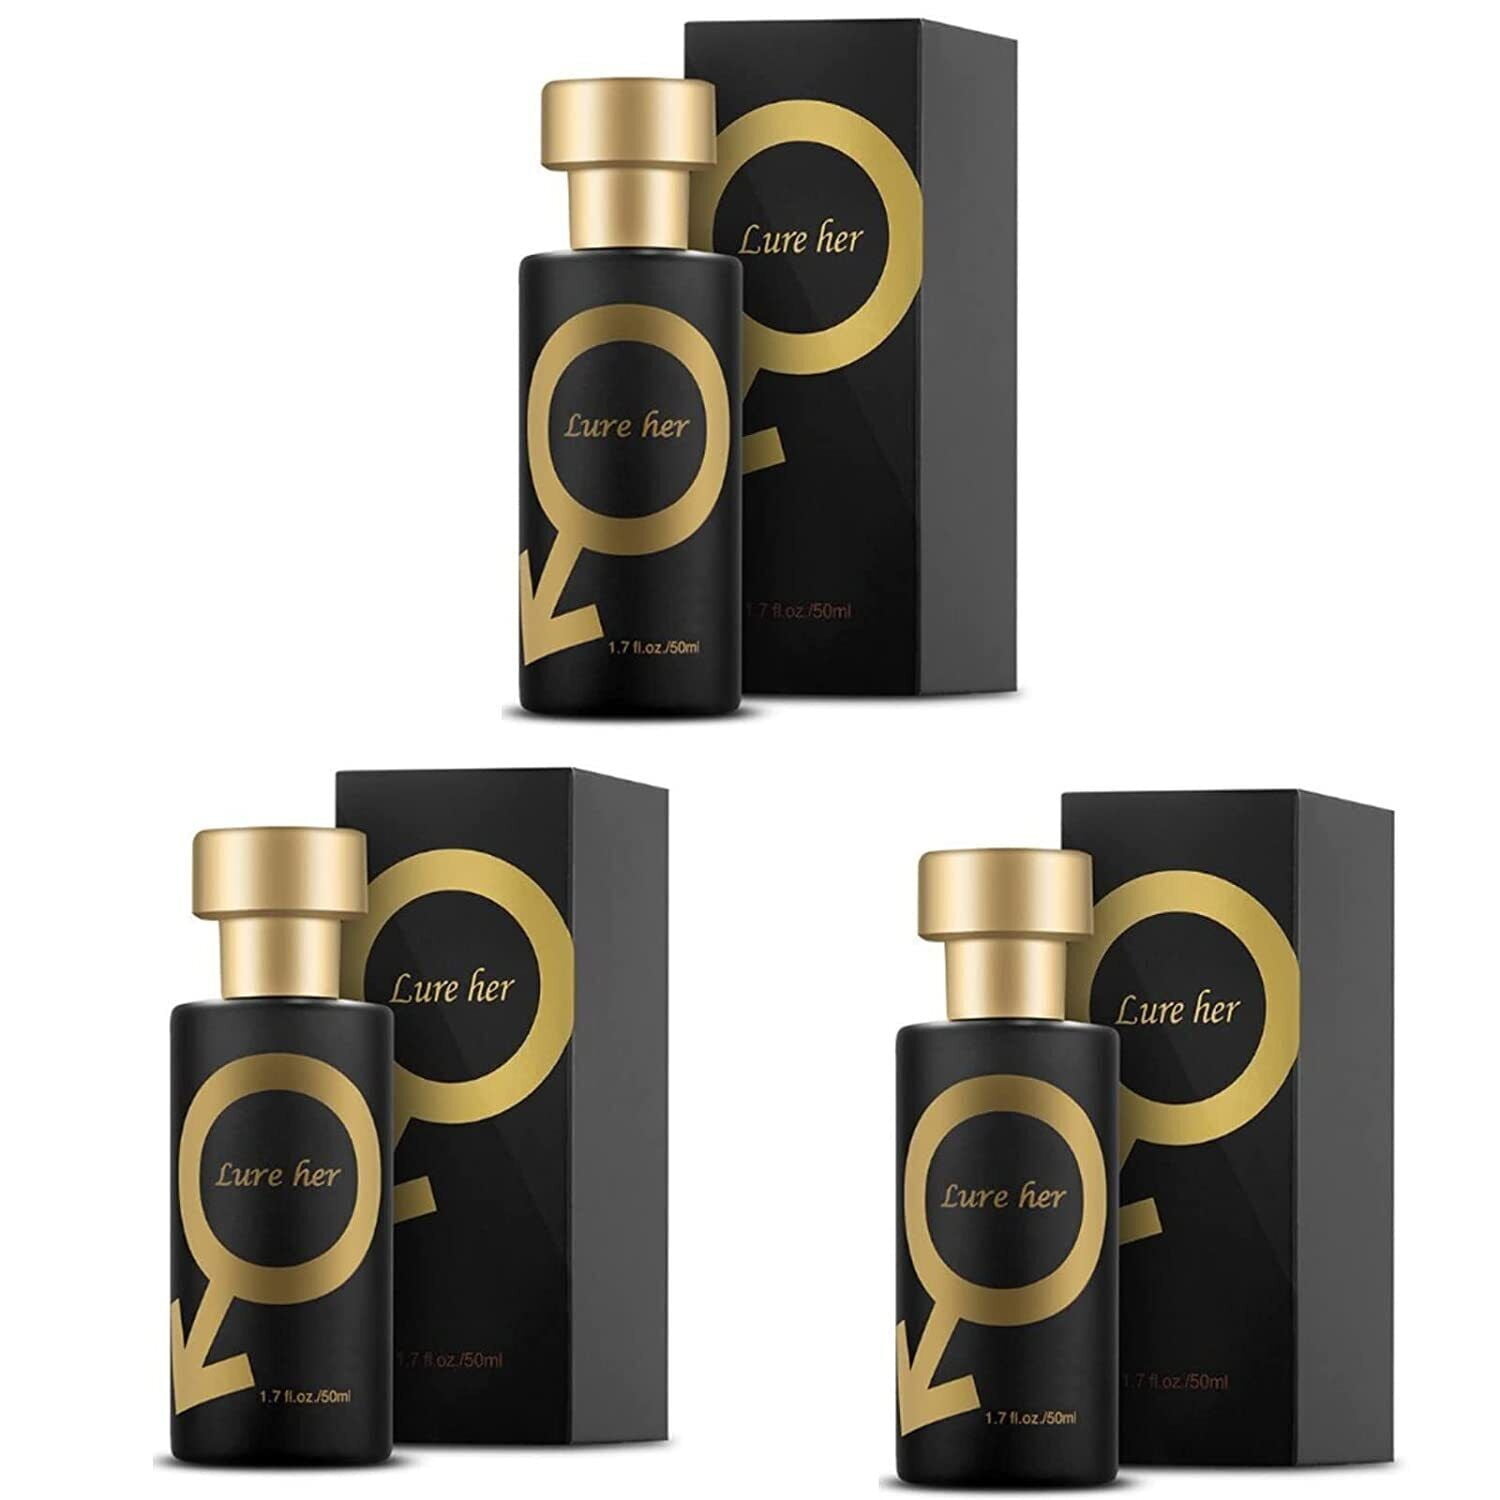  KIT TOWN 6 Pack Refillable Perfume Atomizer 50ml 1.7oz